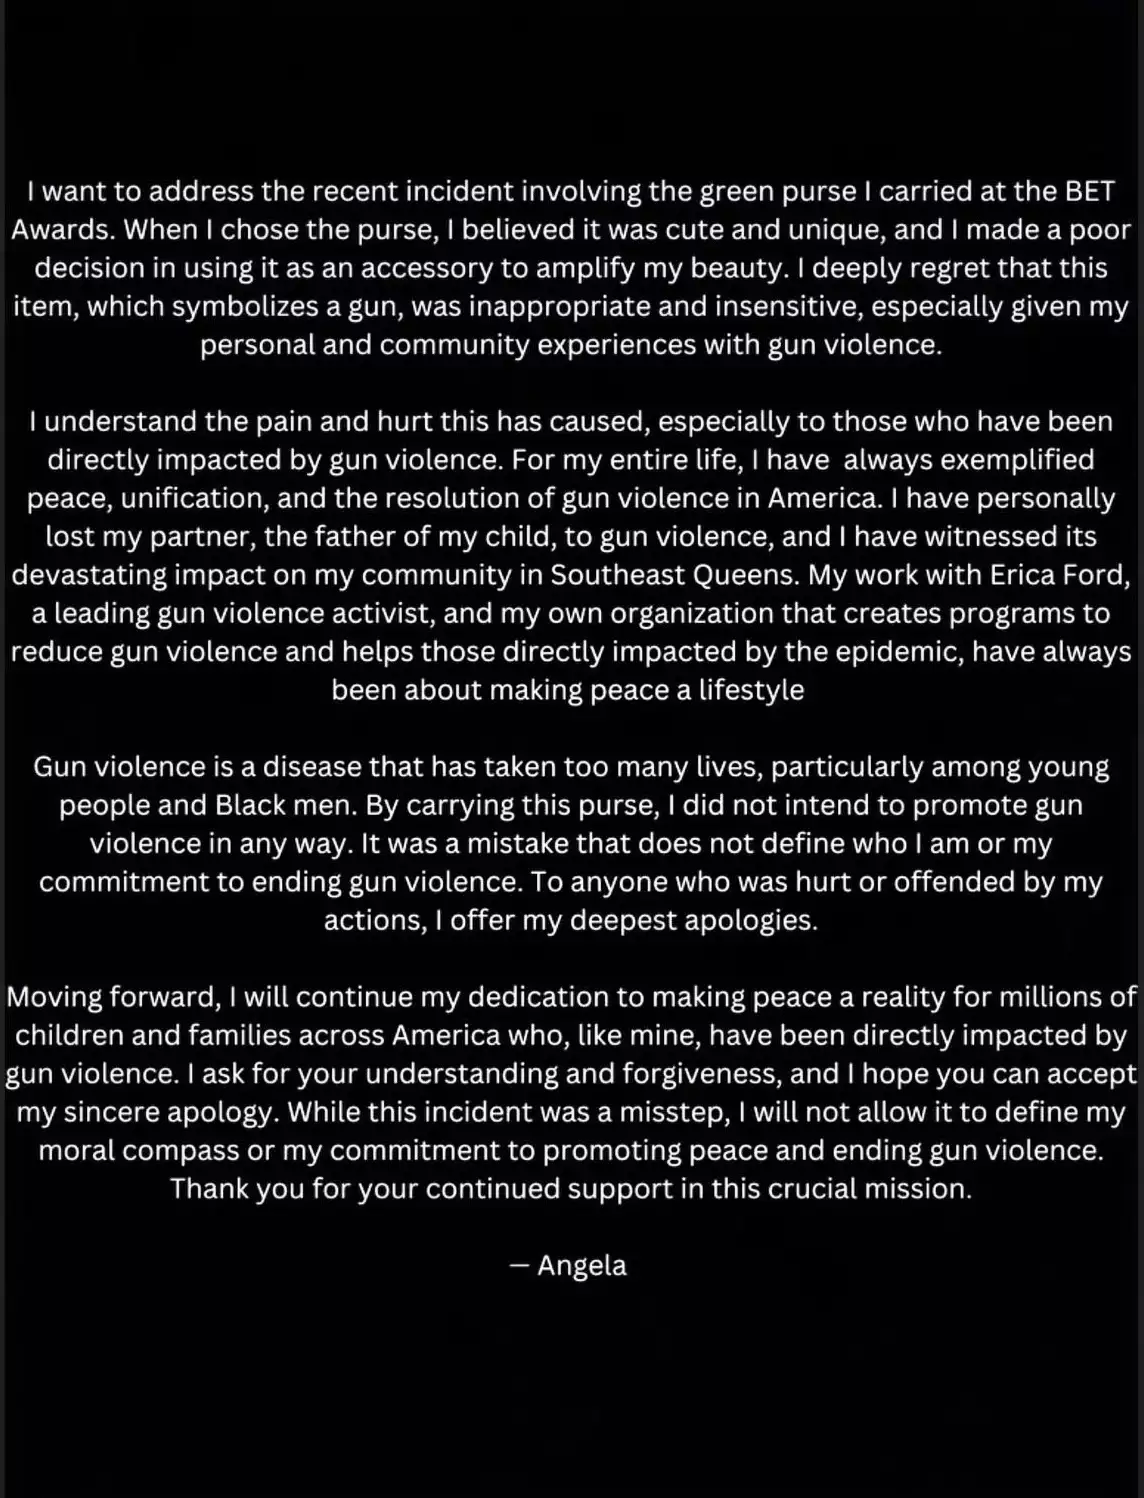 Angela Simmons apology